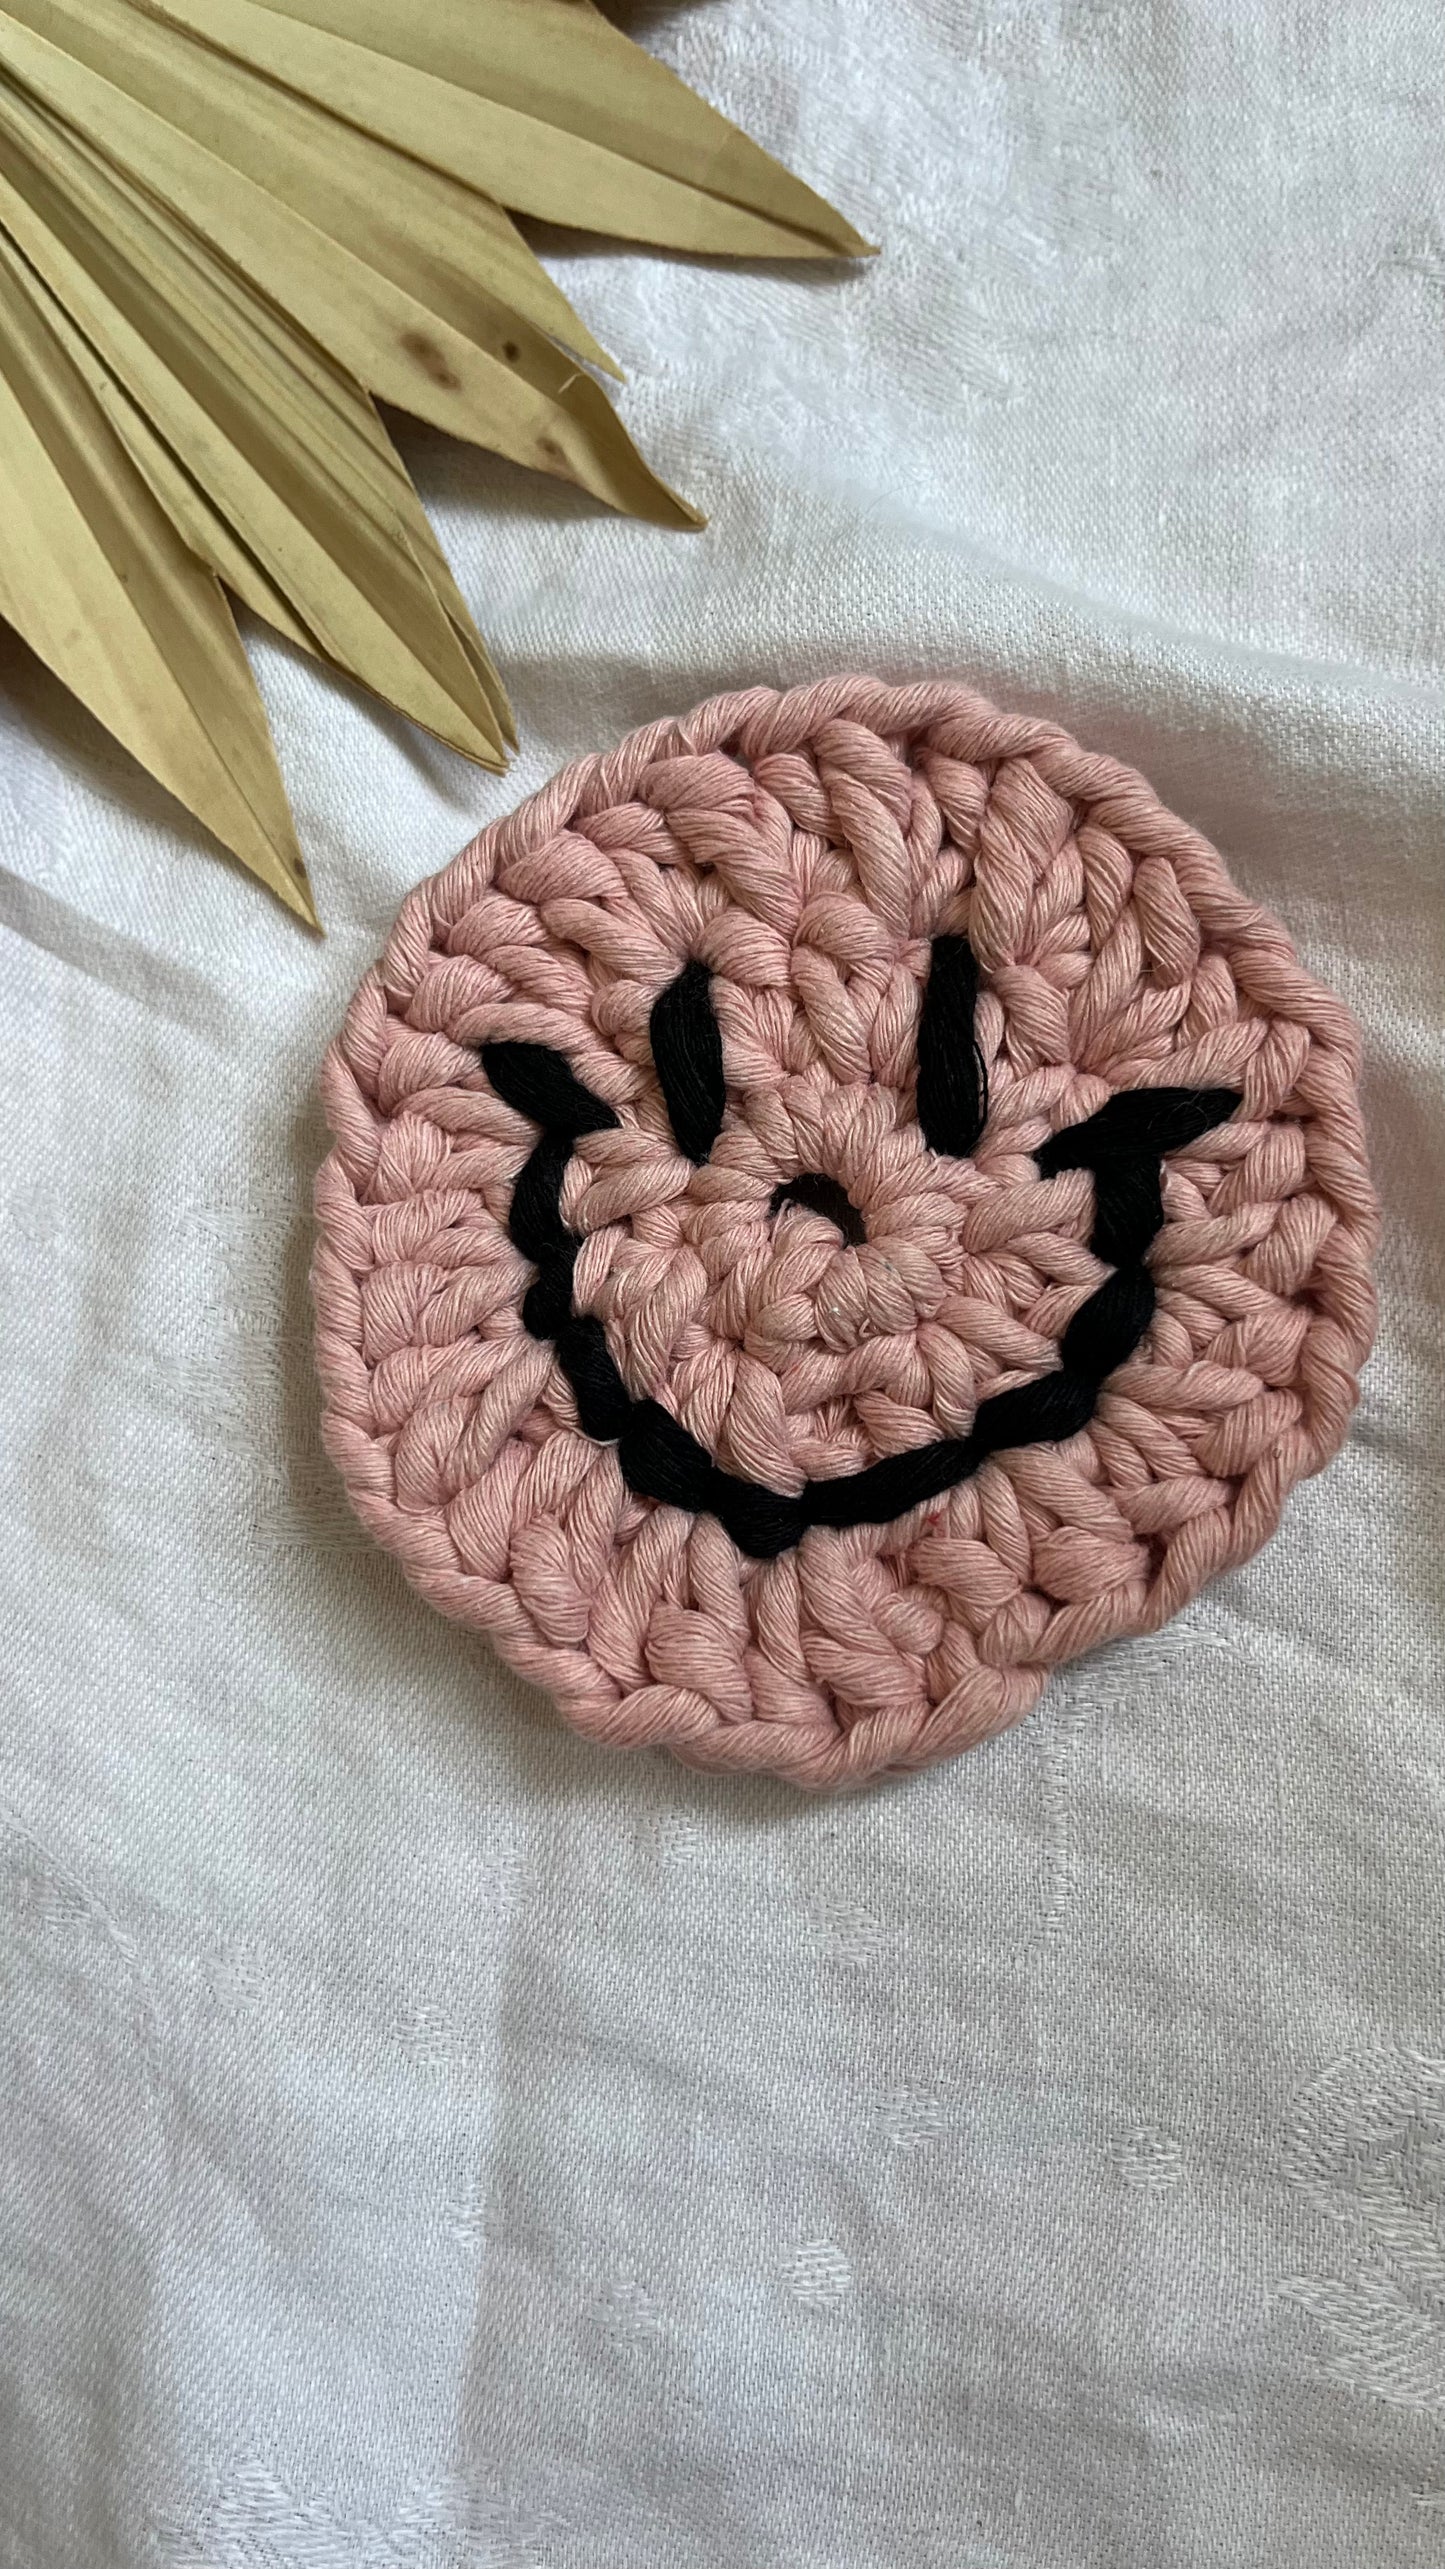 Smiley Face Coaster